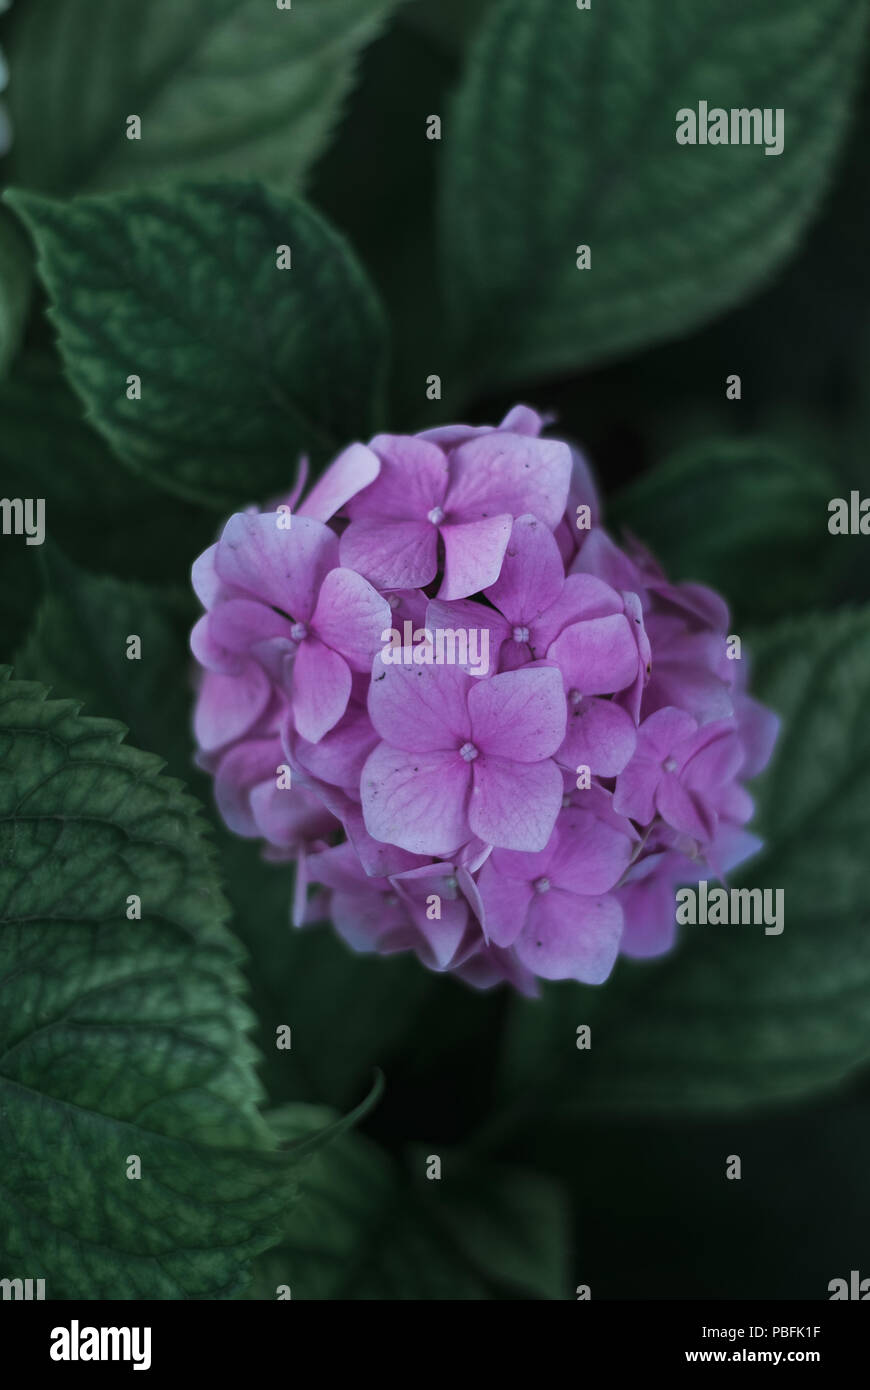 Rosa hortensie Blumen und grüne Blätter, dunkle Tönung. Stockfoto